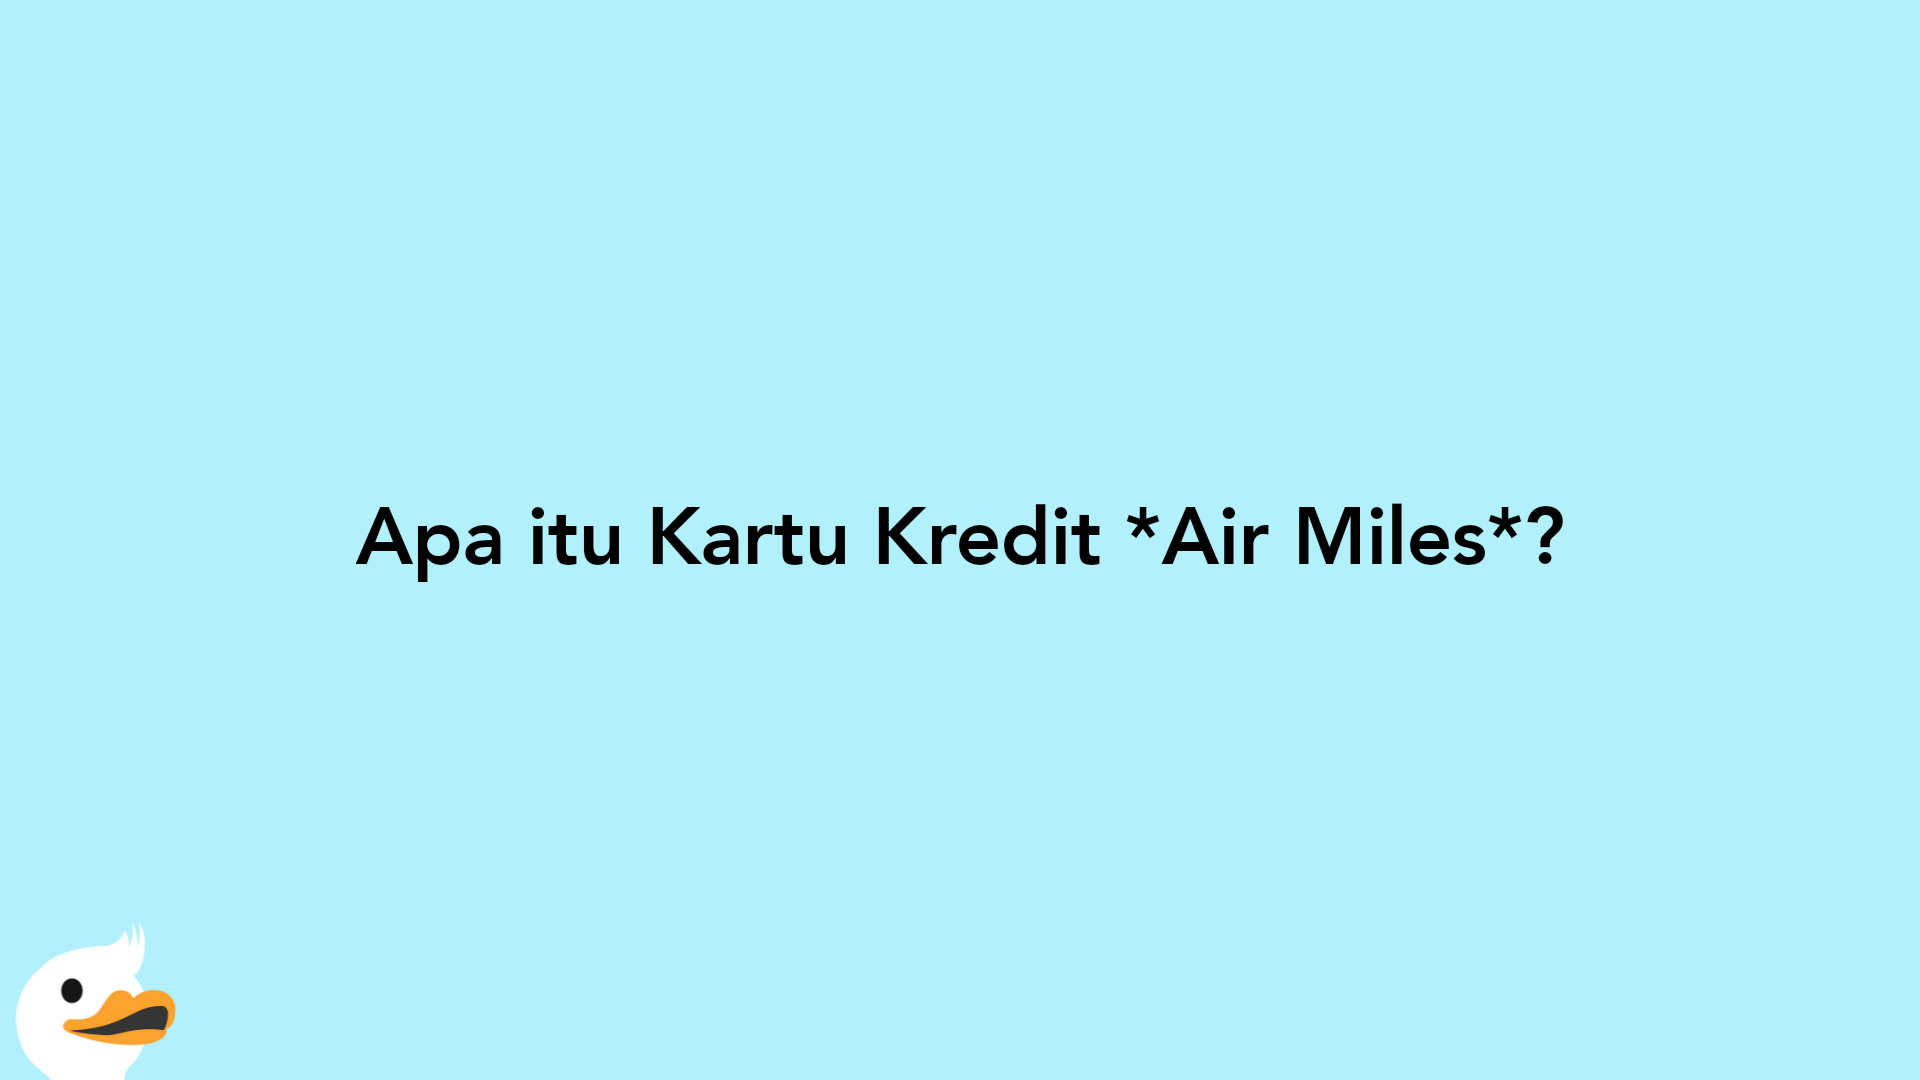 Apa itu Kartu Kredit Air Miles?